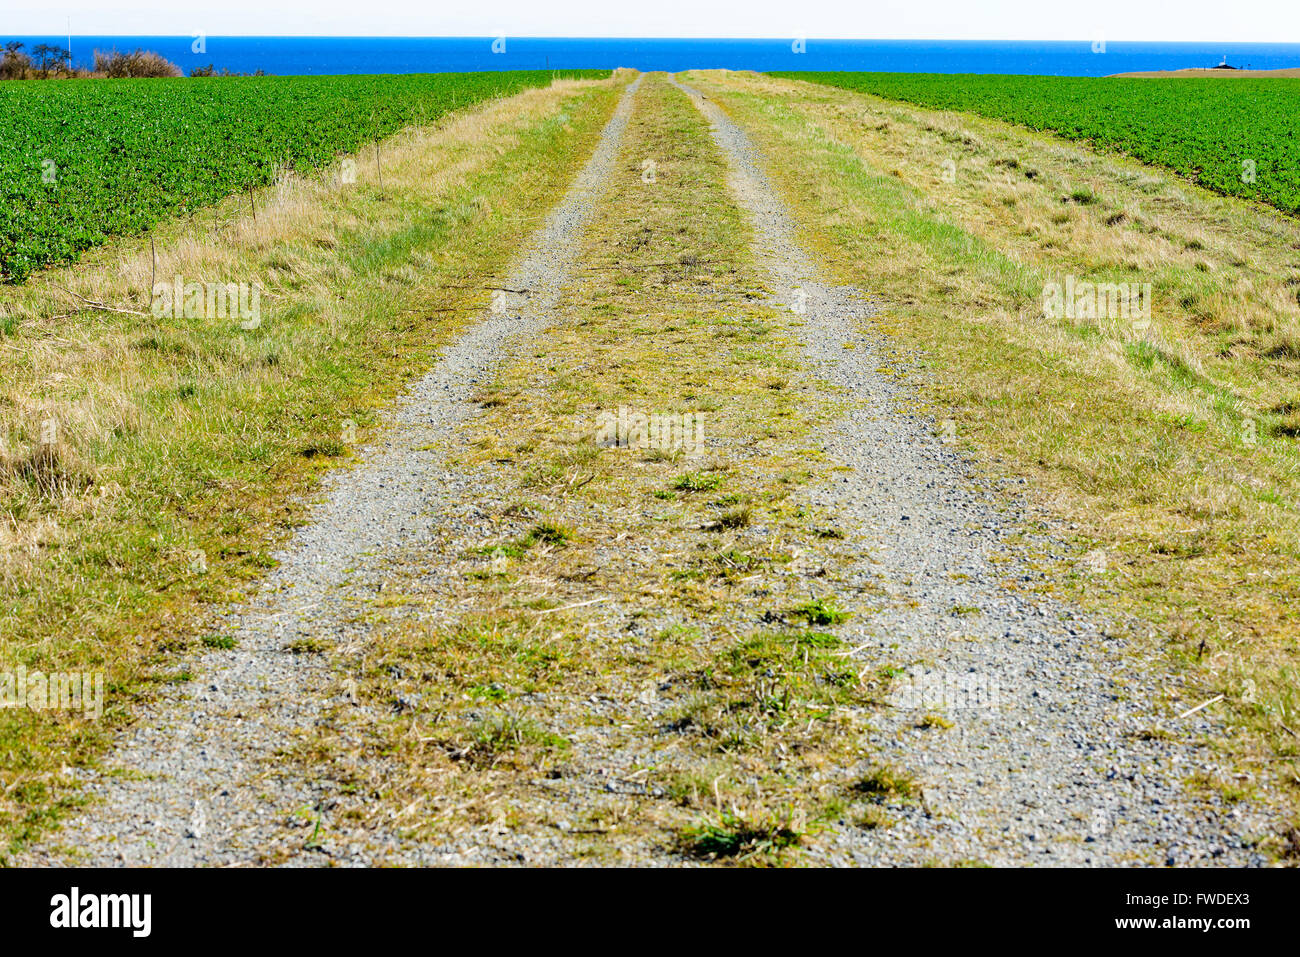 Einer geraden Landstraße führt zu das Meer in der Ferne. Bauern Felder auf beiden Seiten der Straße. Wetter ist sonnig und warm Stockfoto